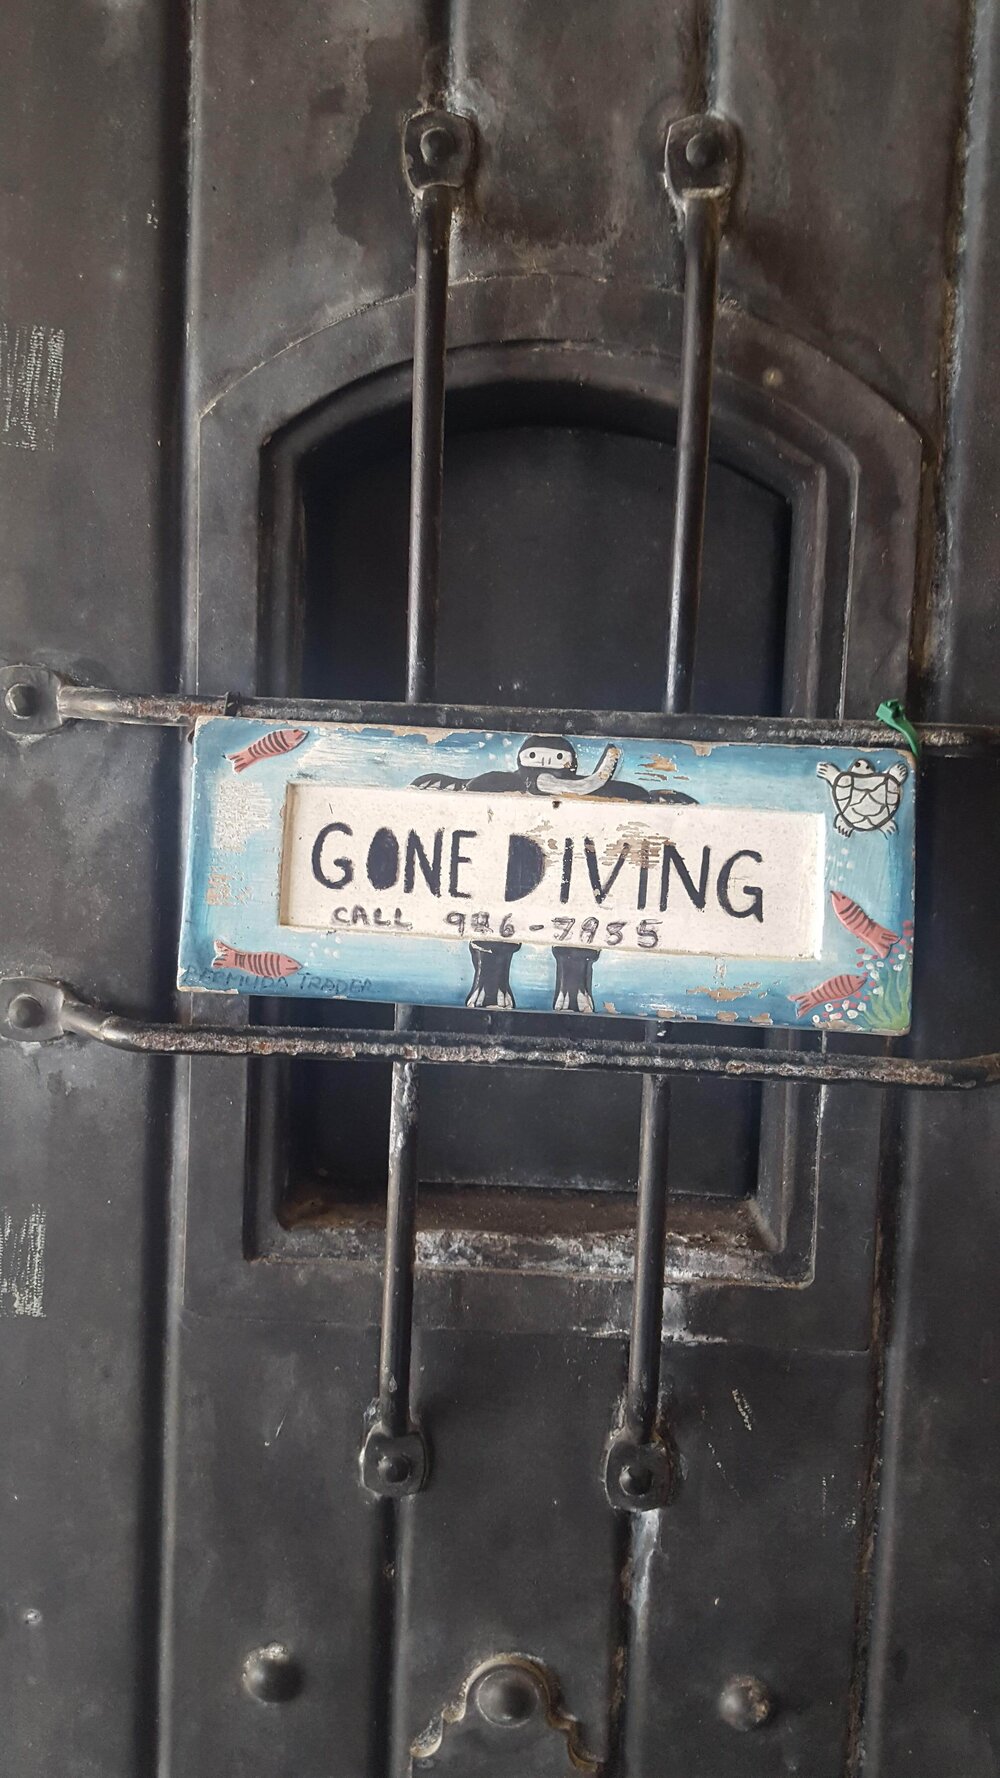 Gone diving